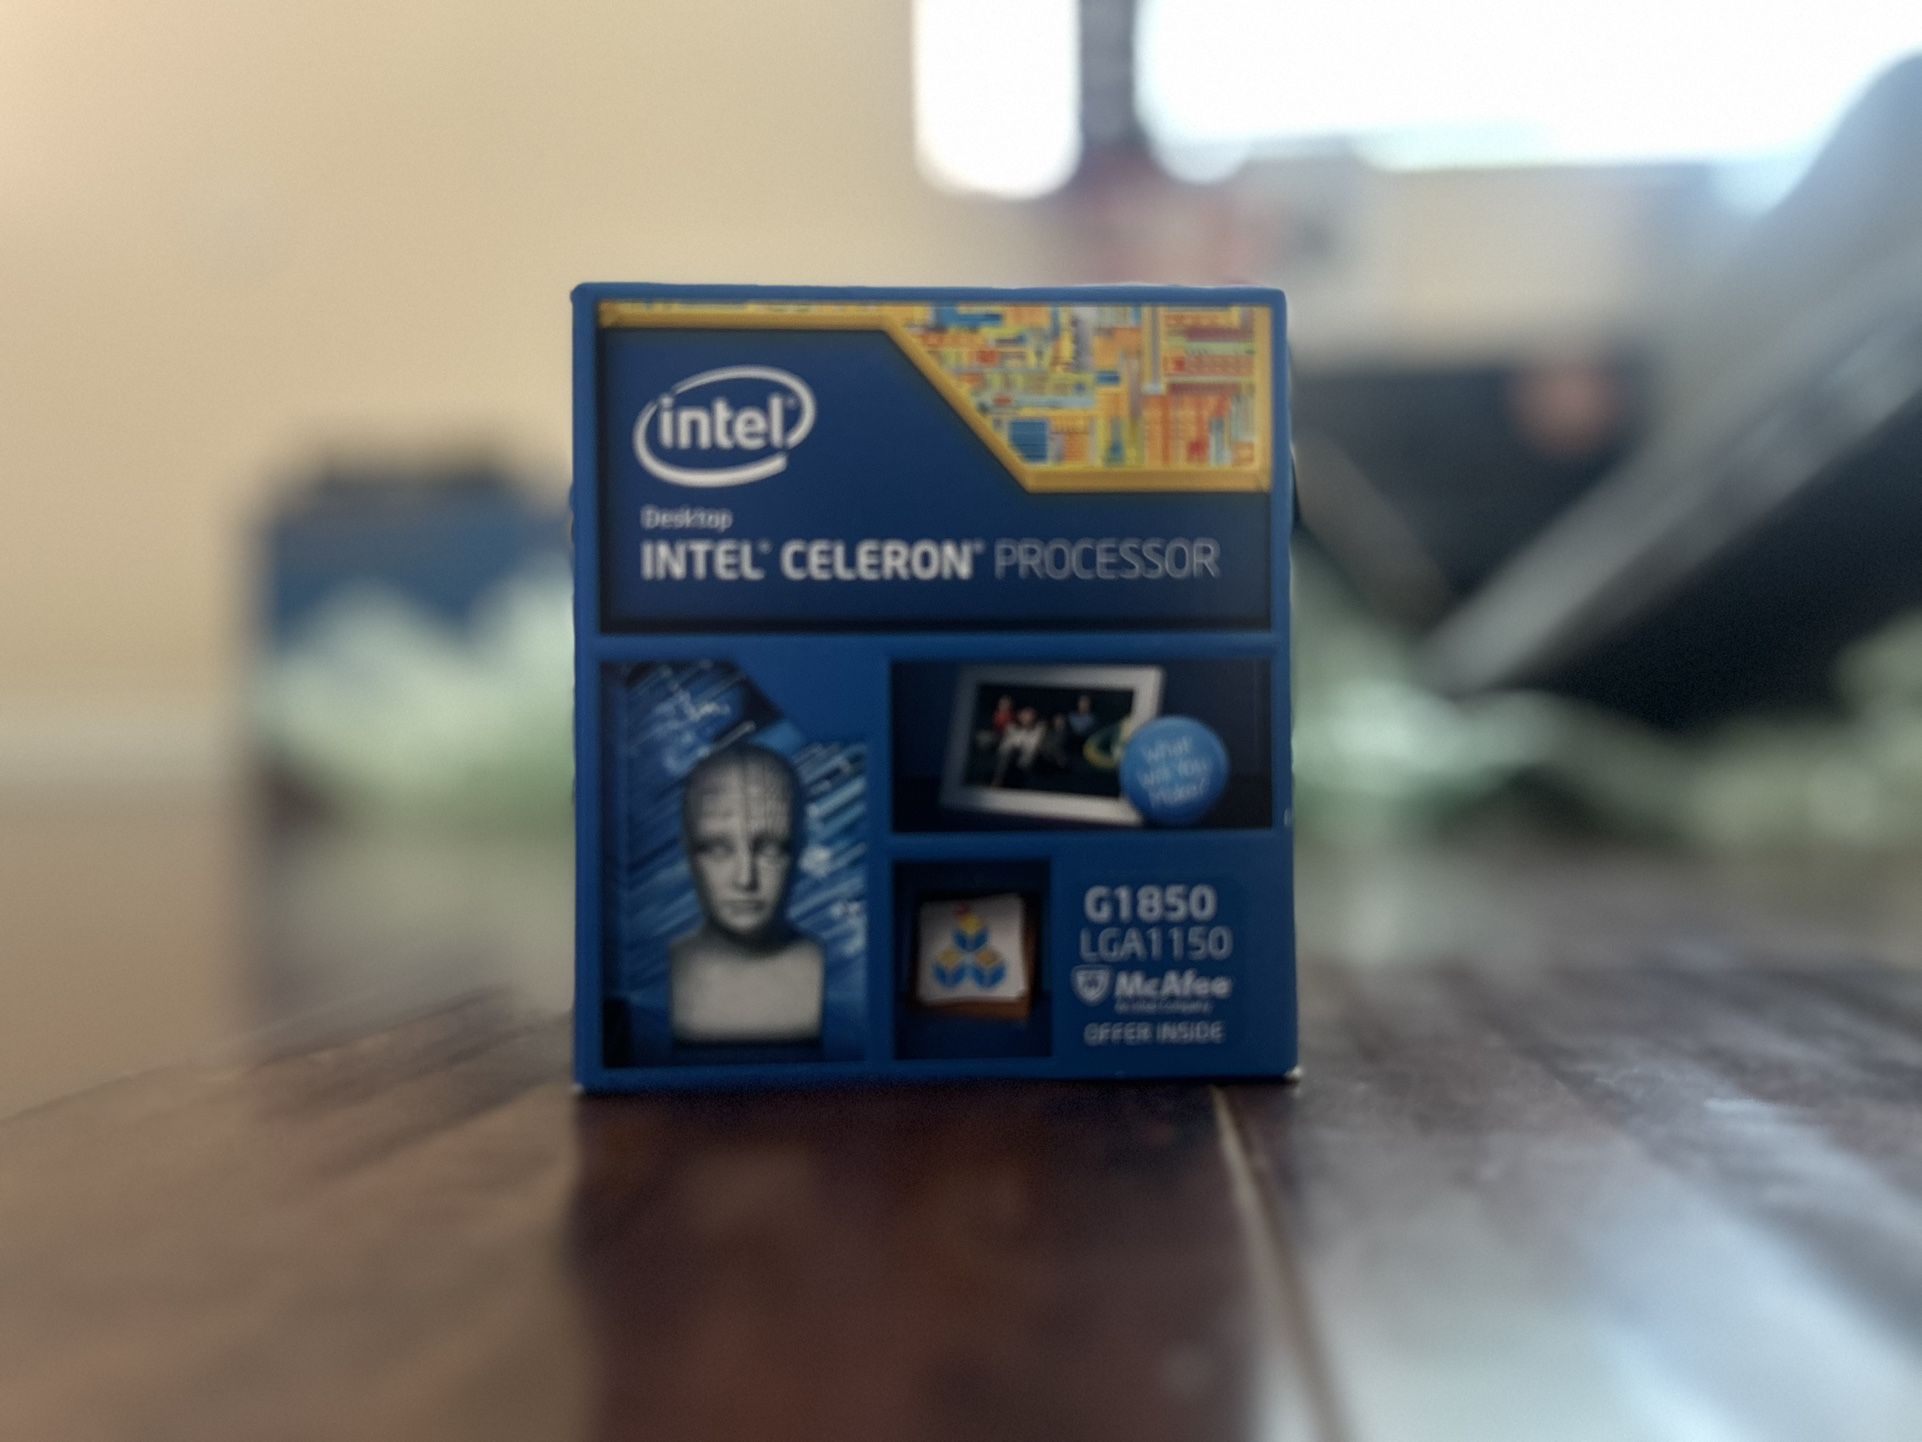 Intel 